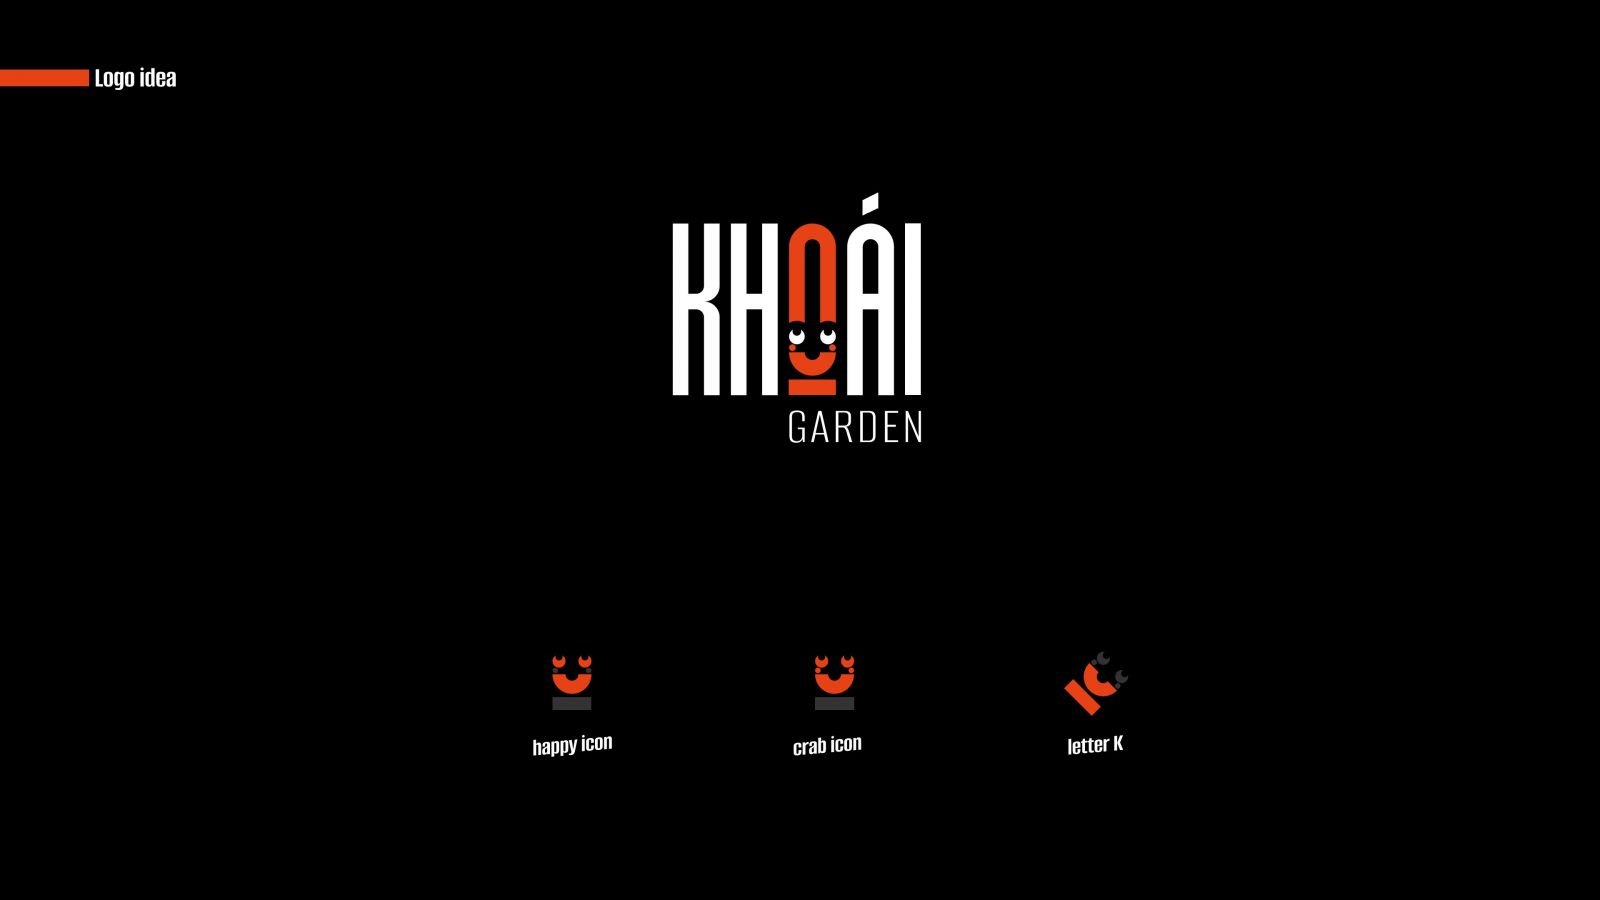 logo nhà hàng Khoái Garden